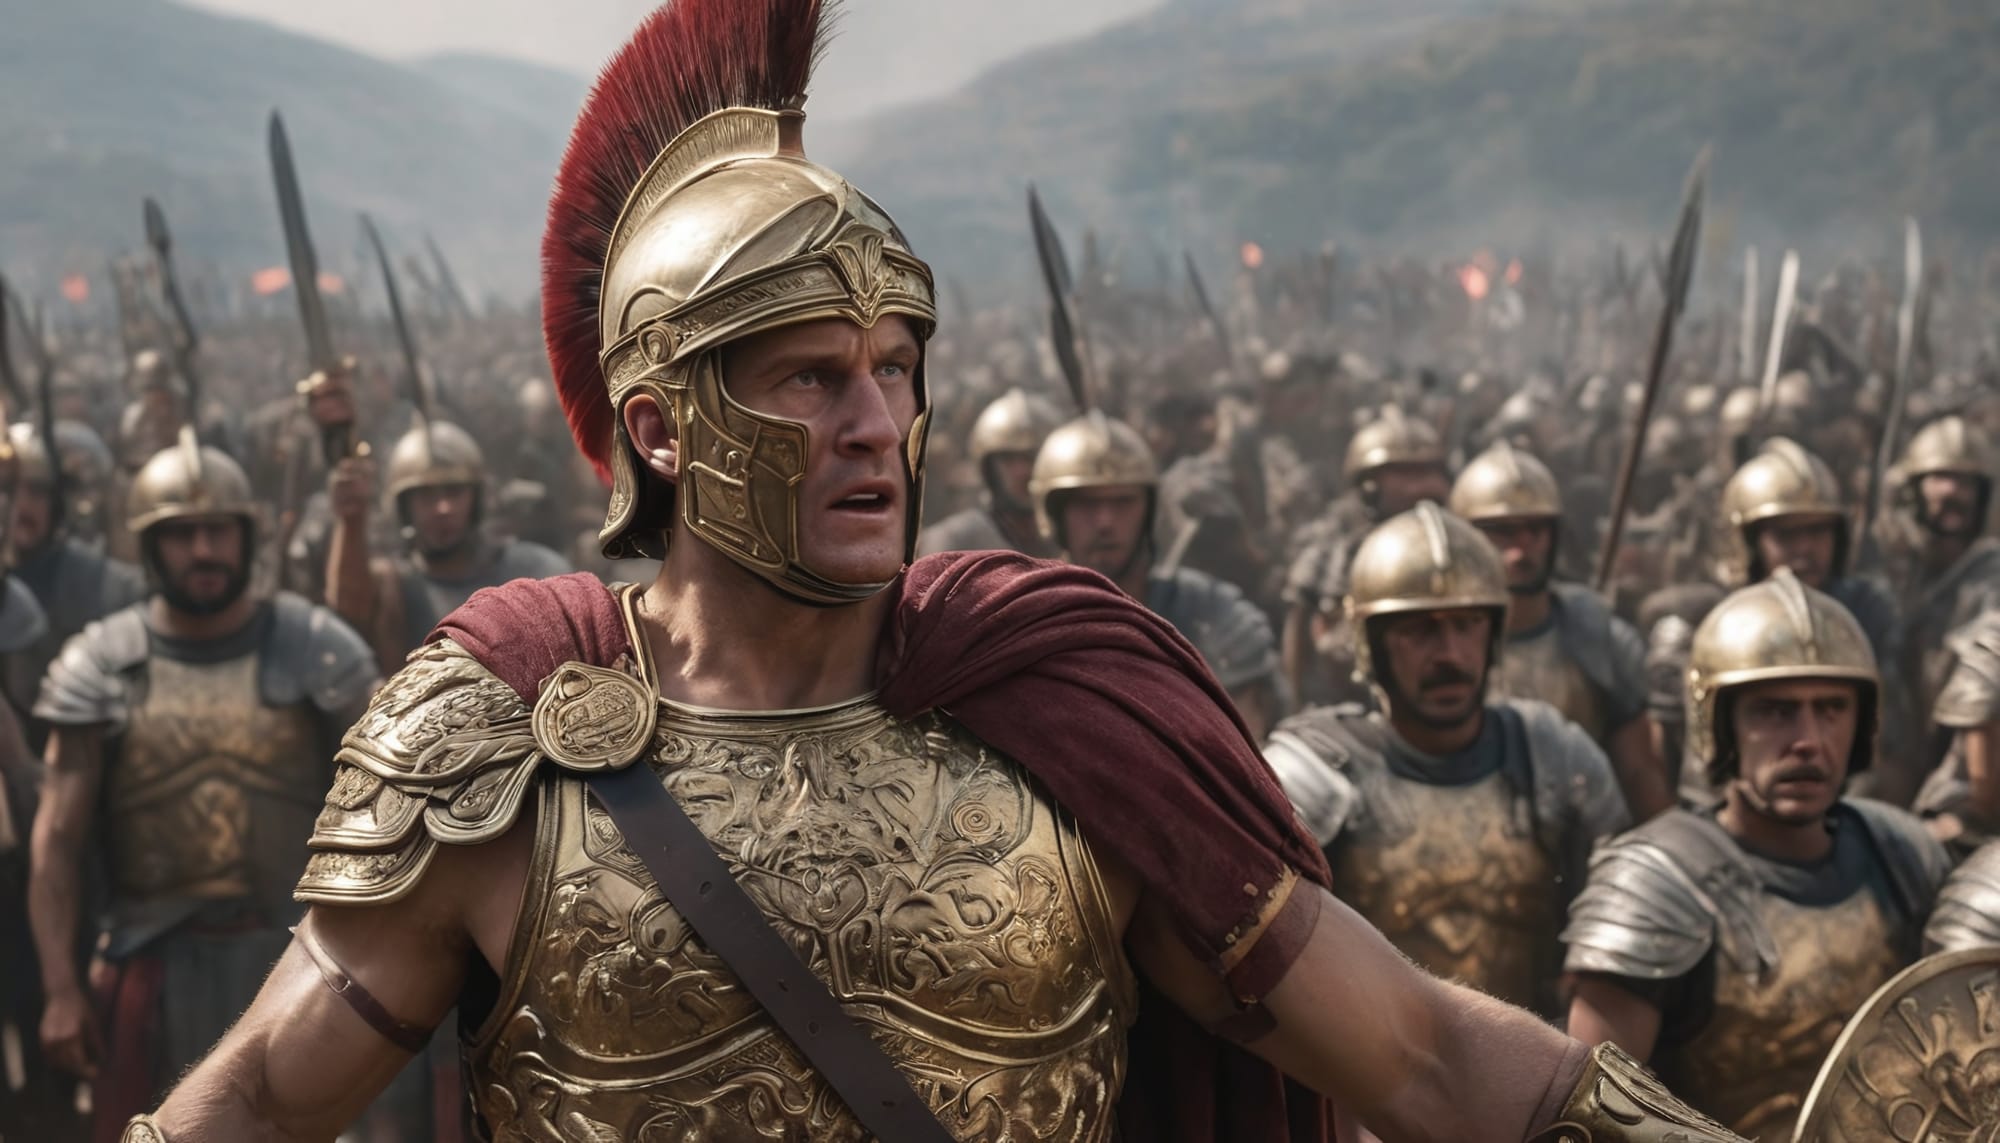 100 Heroes: Mark Antony